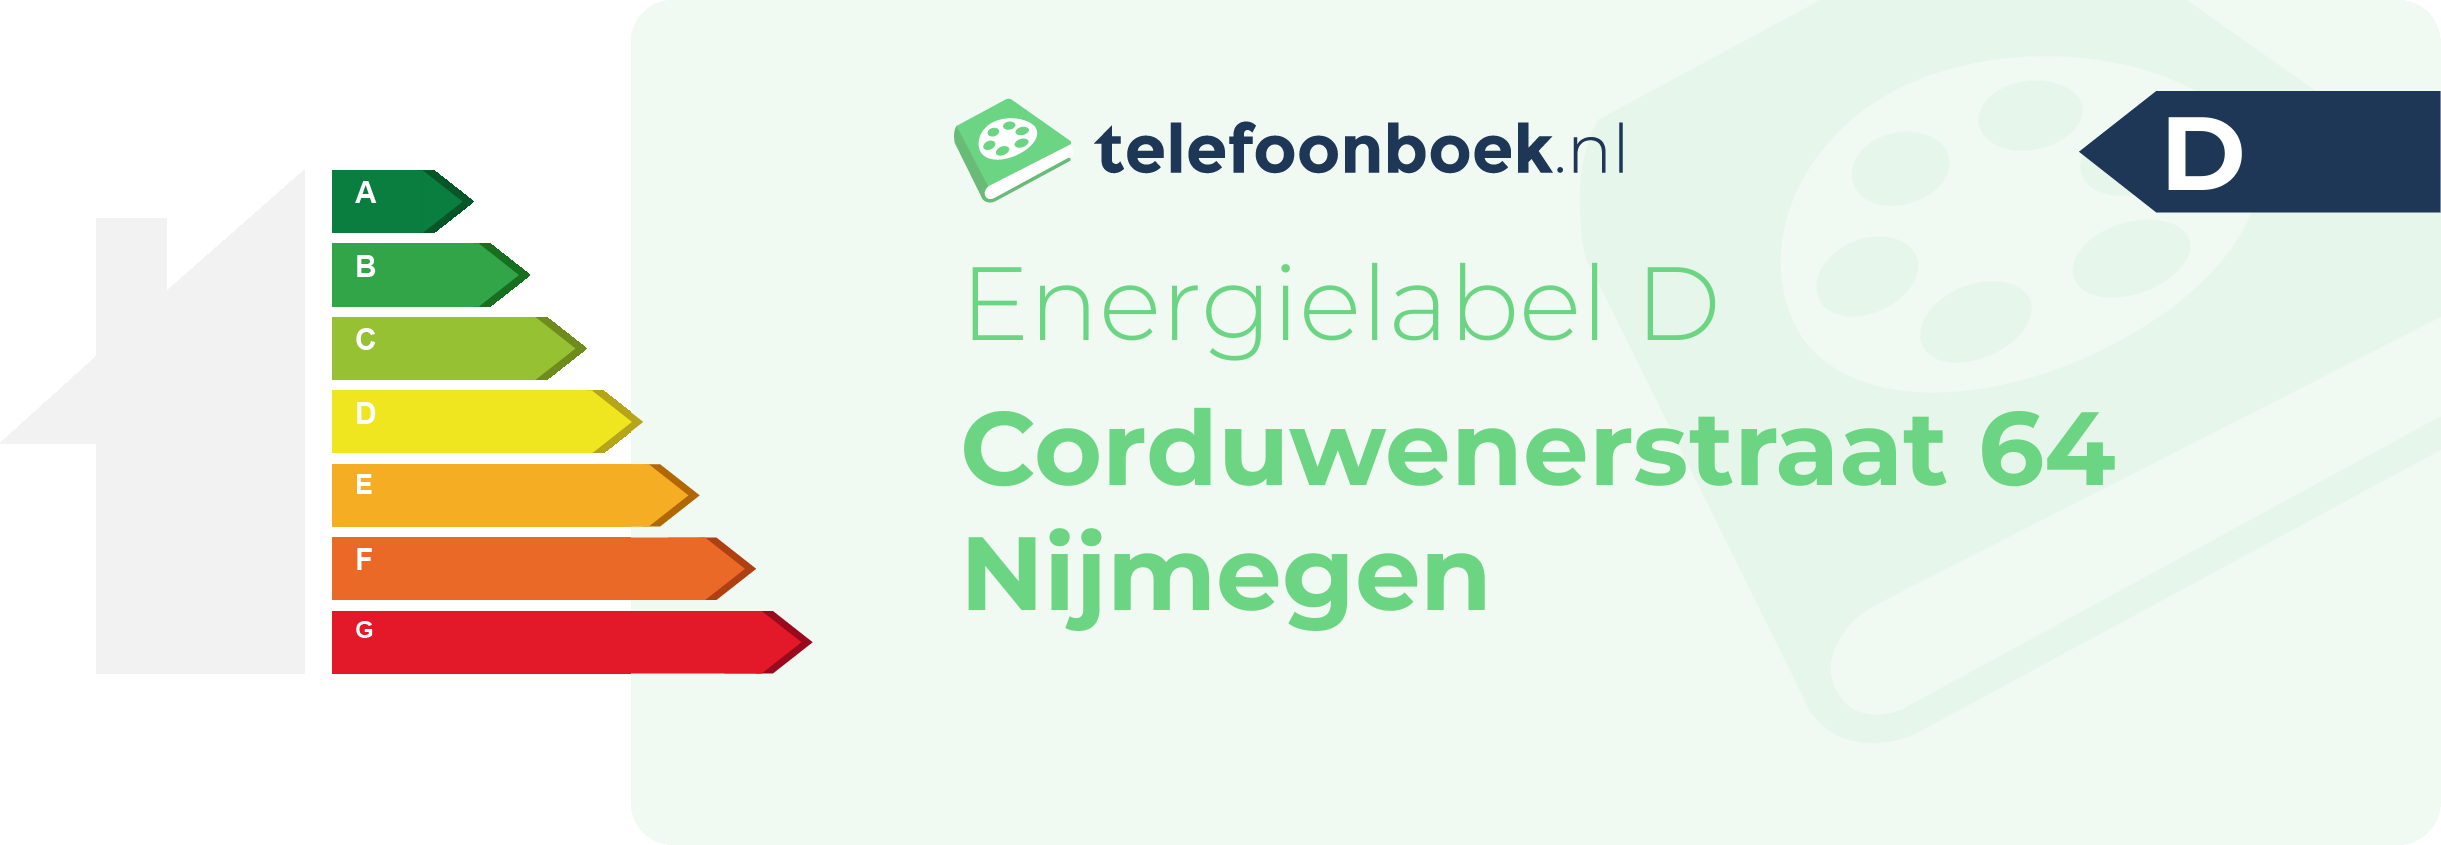 Energielabel Corduwenerstraat 64 Nijmegen